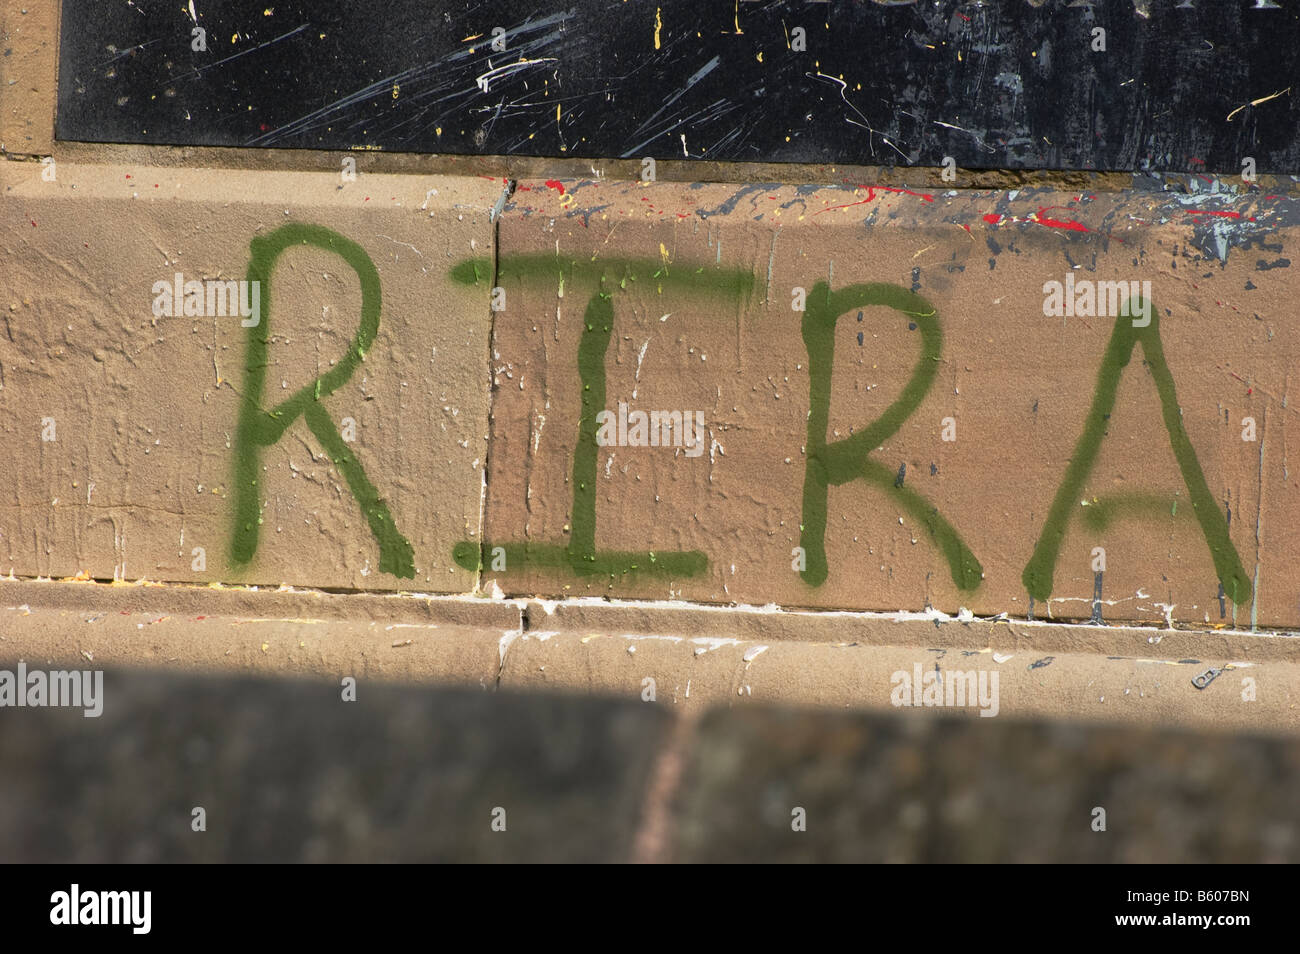 RIRA graffiti city wall, derry Stock Photo